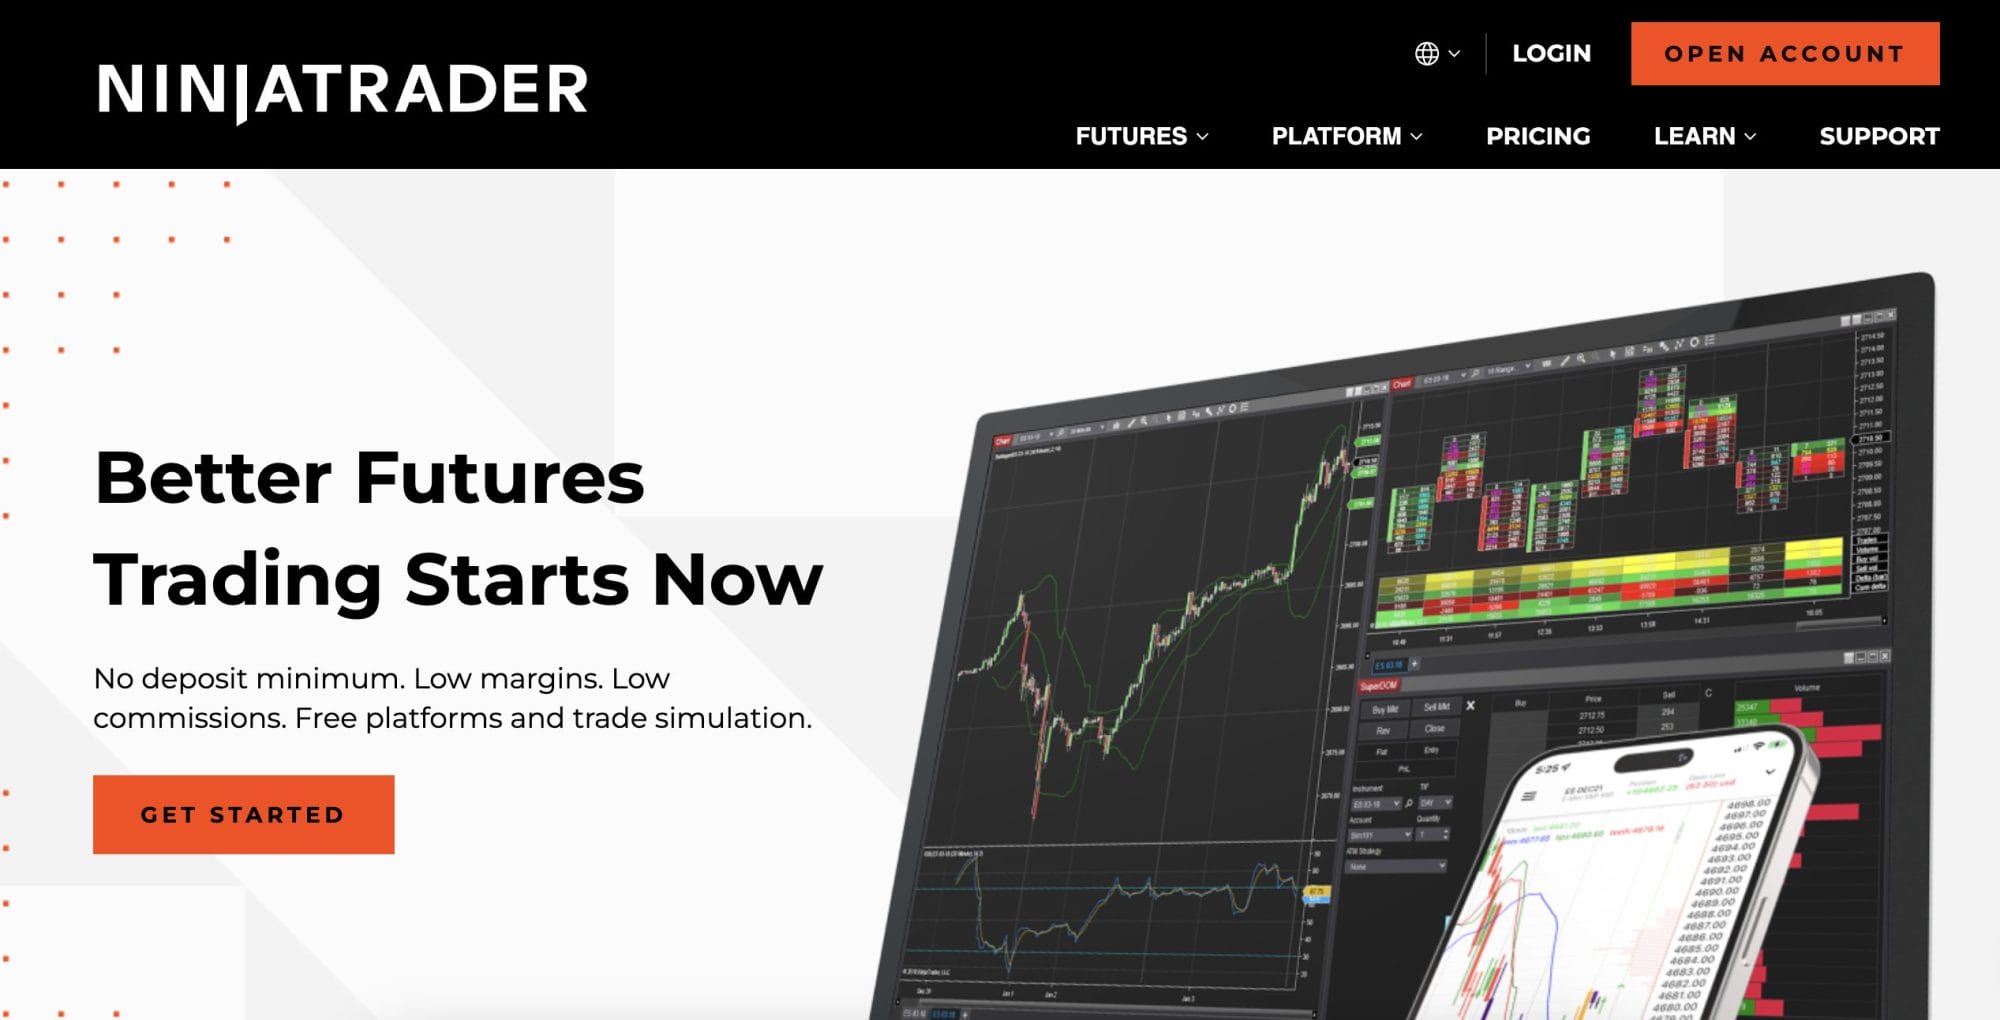 NinjaTrader Futures Trading